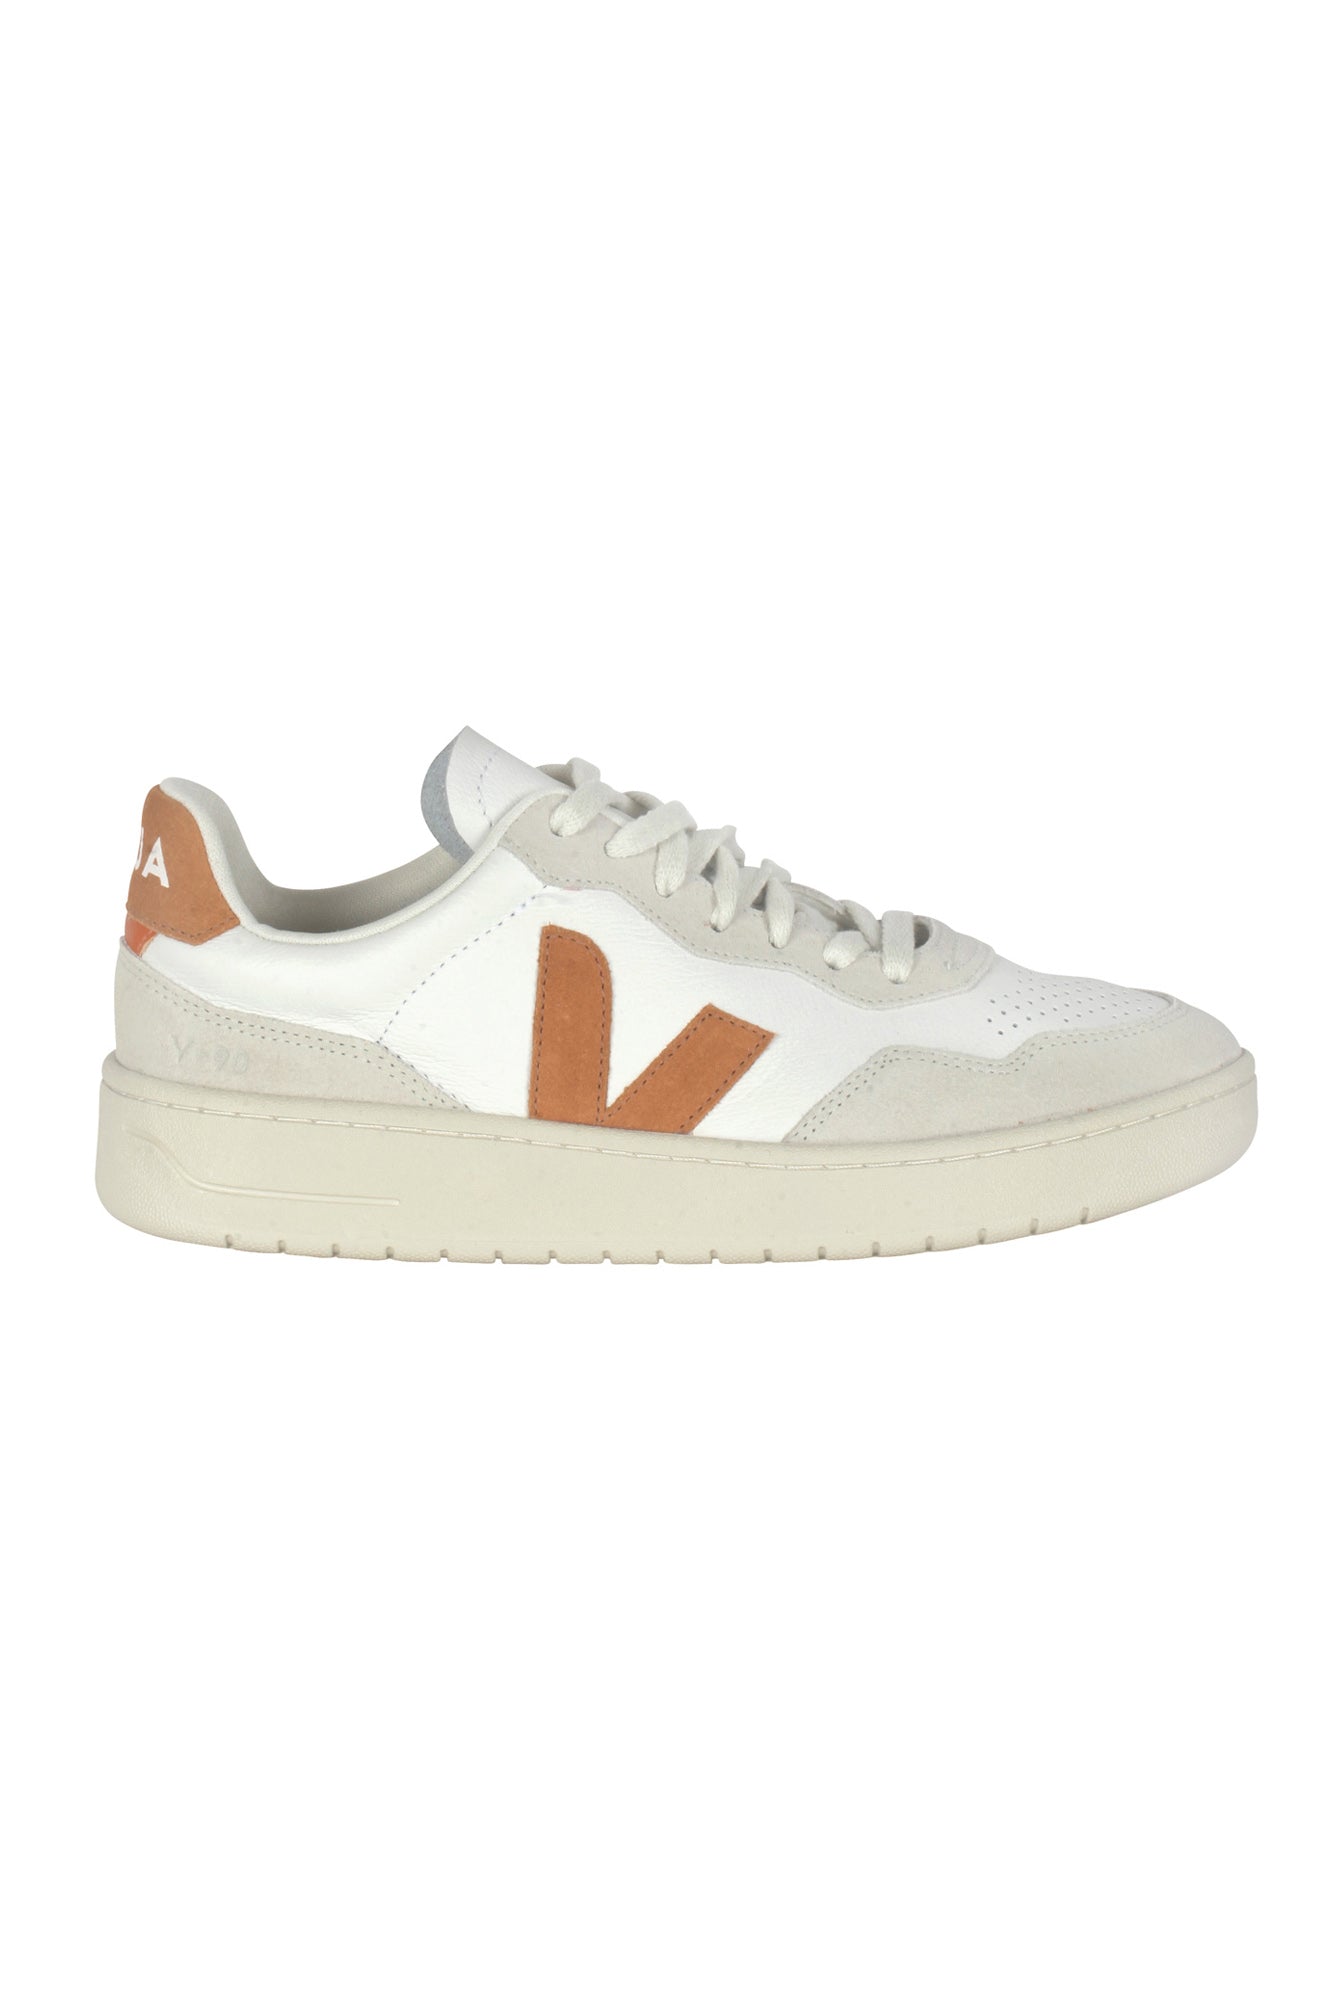 Veja - Sneakers - 430612 - Bianco/Ambra